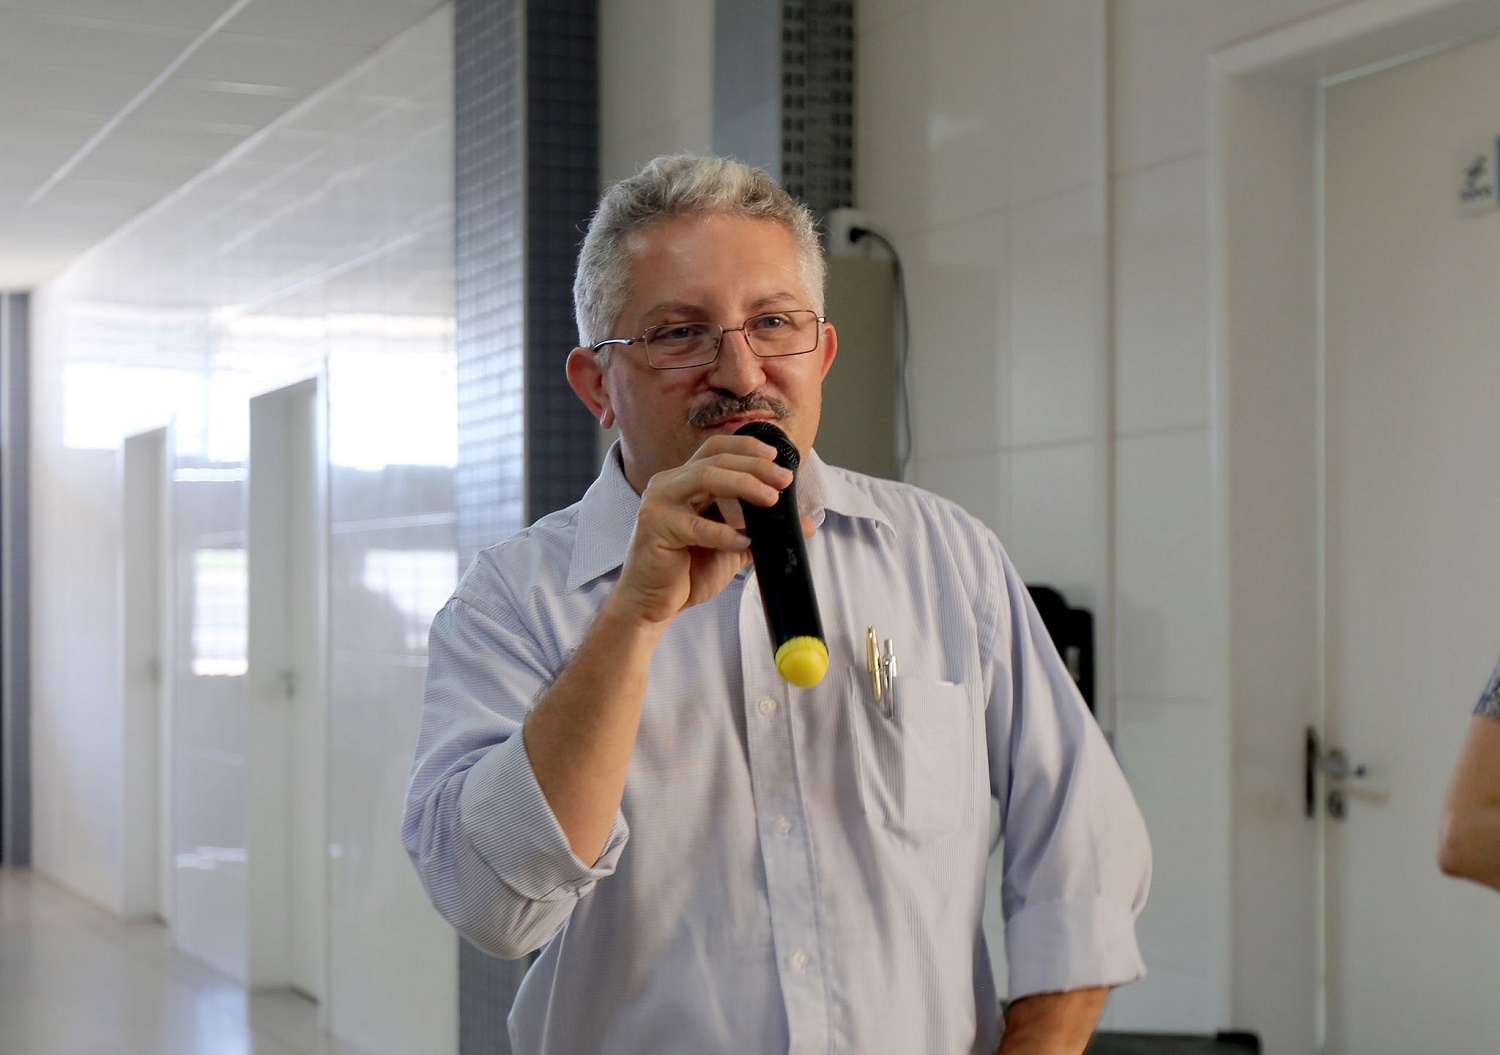  Para o presidente do Conselho de Administração da Fapese Roberto Rodrigues, a mudança de sede é importante por aproximar ainda mais a entidade aos pesquisadores da UFS.